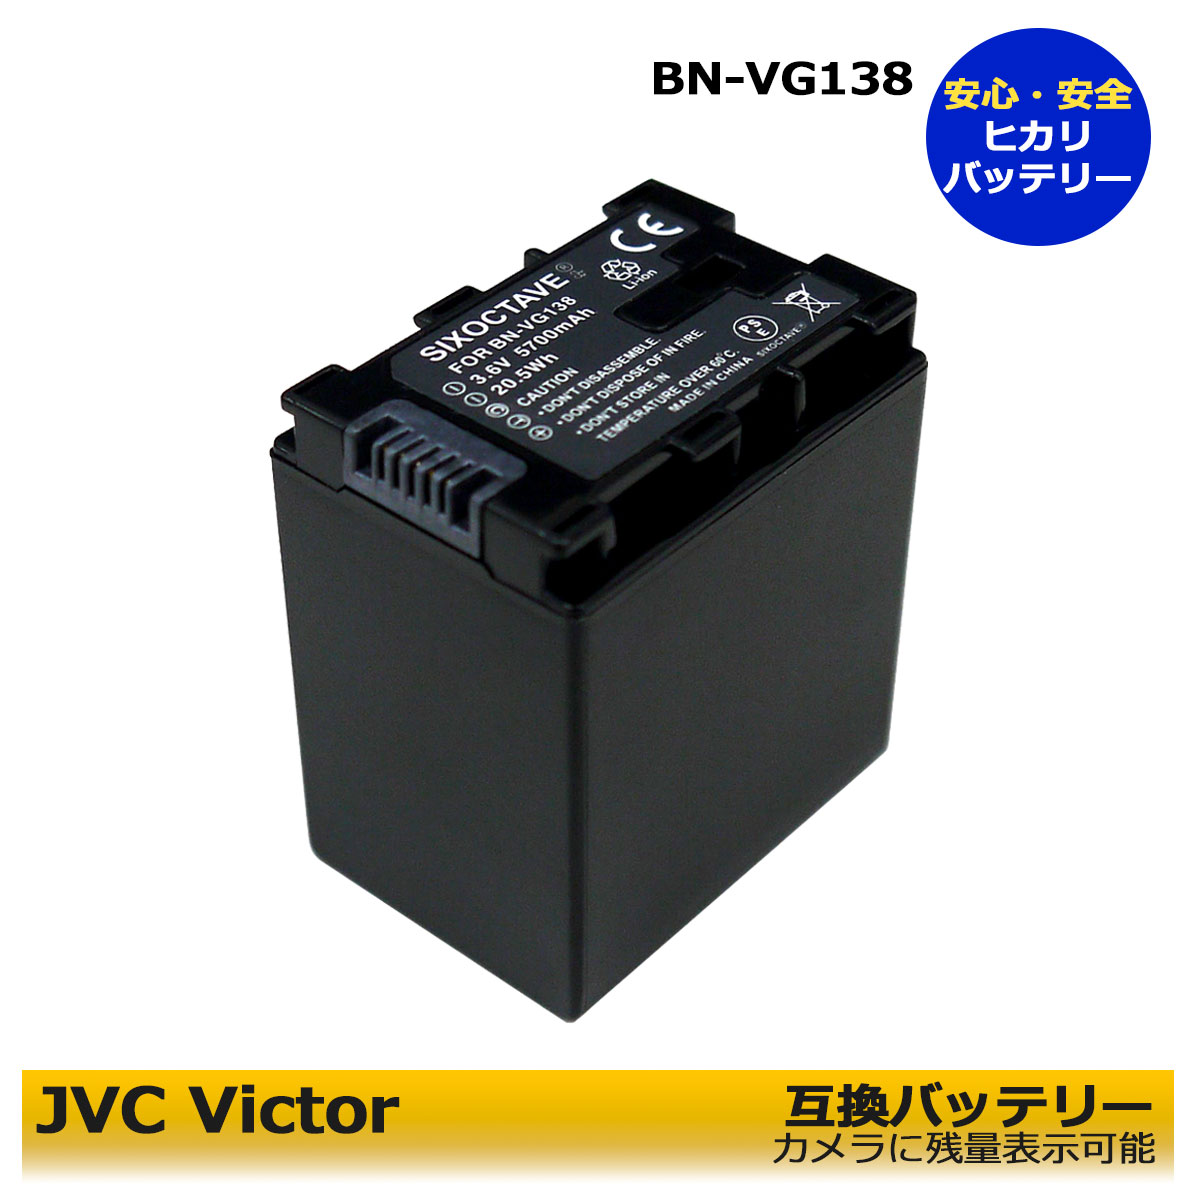 BN-VG138 BN-VG129 送料無料 【あす楽対応】JVC VICTOR 互換バッテリー 1点 残量表示可能 GZ-HM570 / GZ-HM670 / GZ-HM690 / GZ-HM880 / GZ-HM890 / GZ-HM990 / GZ-MG980 / GZ-MS210 / GZ-MS21…